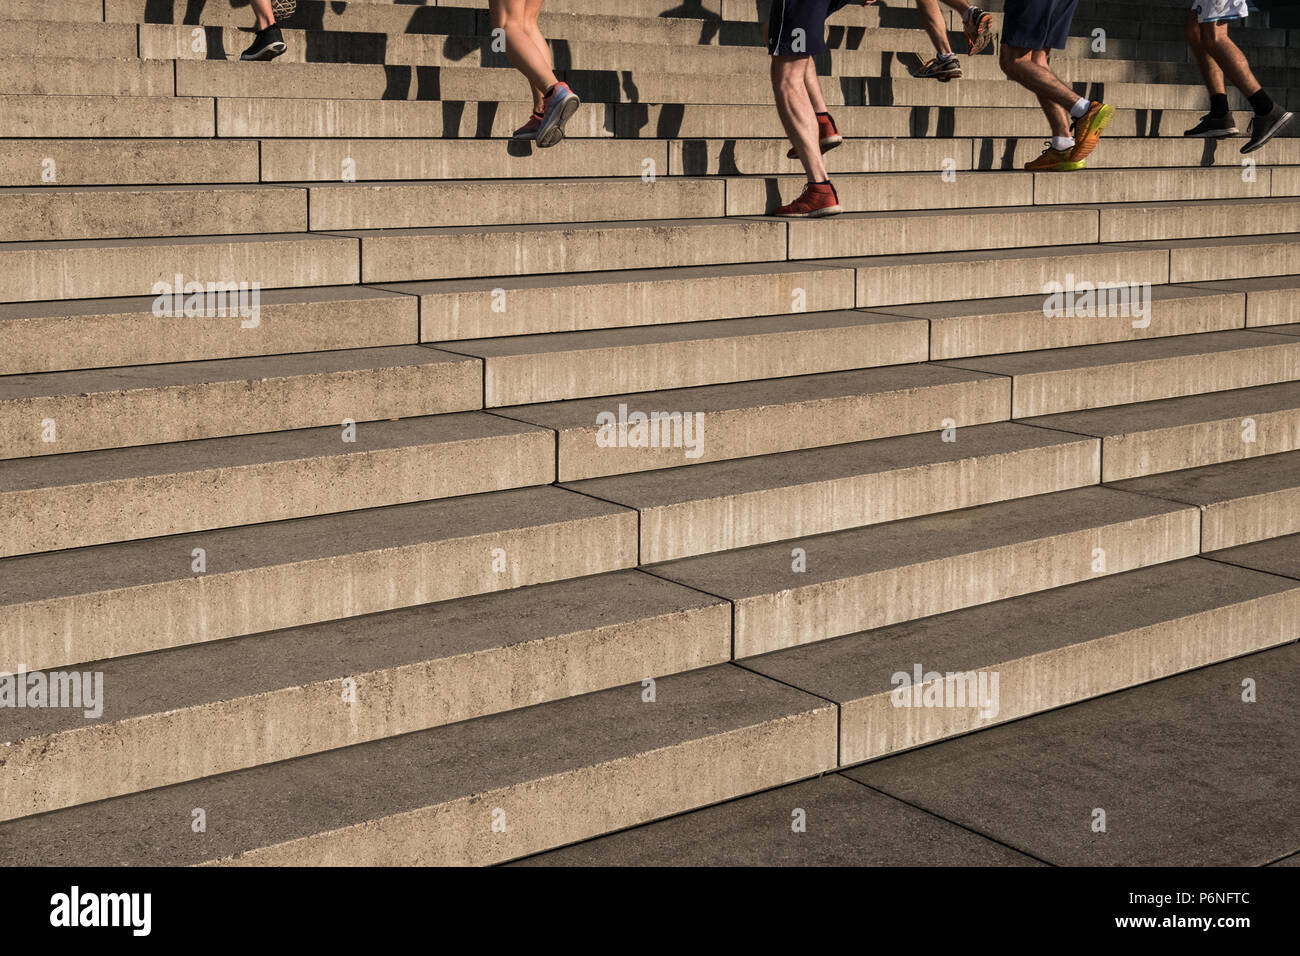 Gruppe von Jogger laufen nach oben Treppen - Fitness im Freien Stockfoto